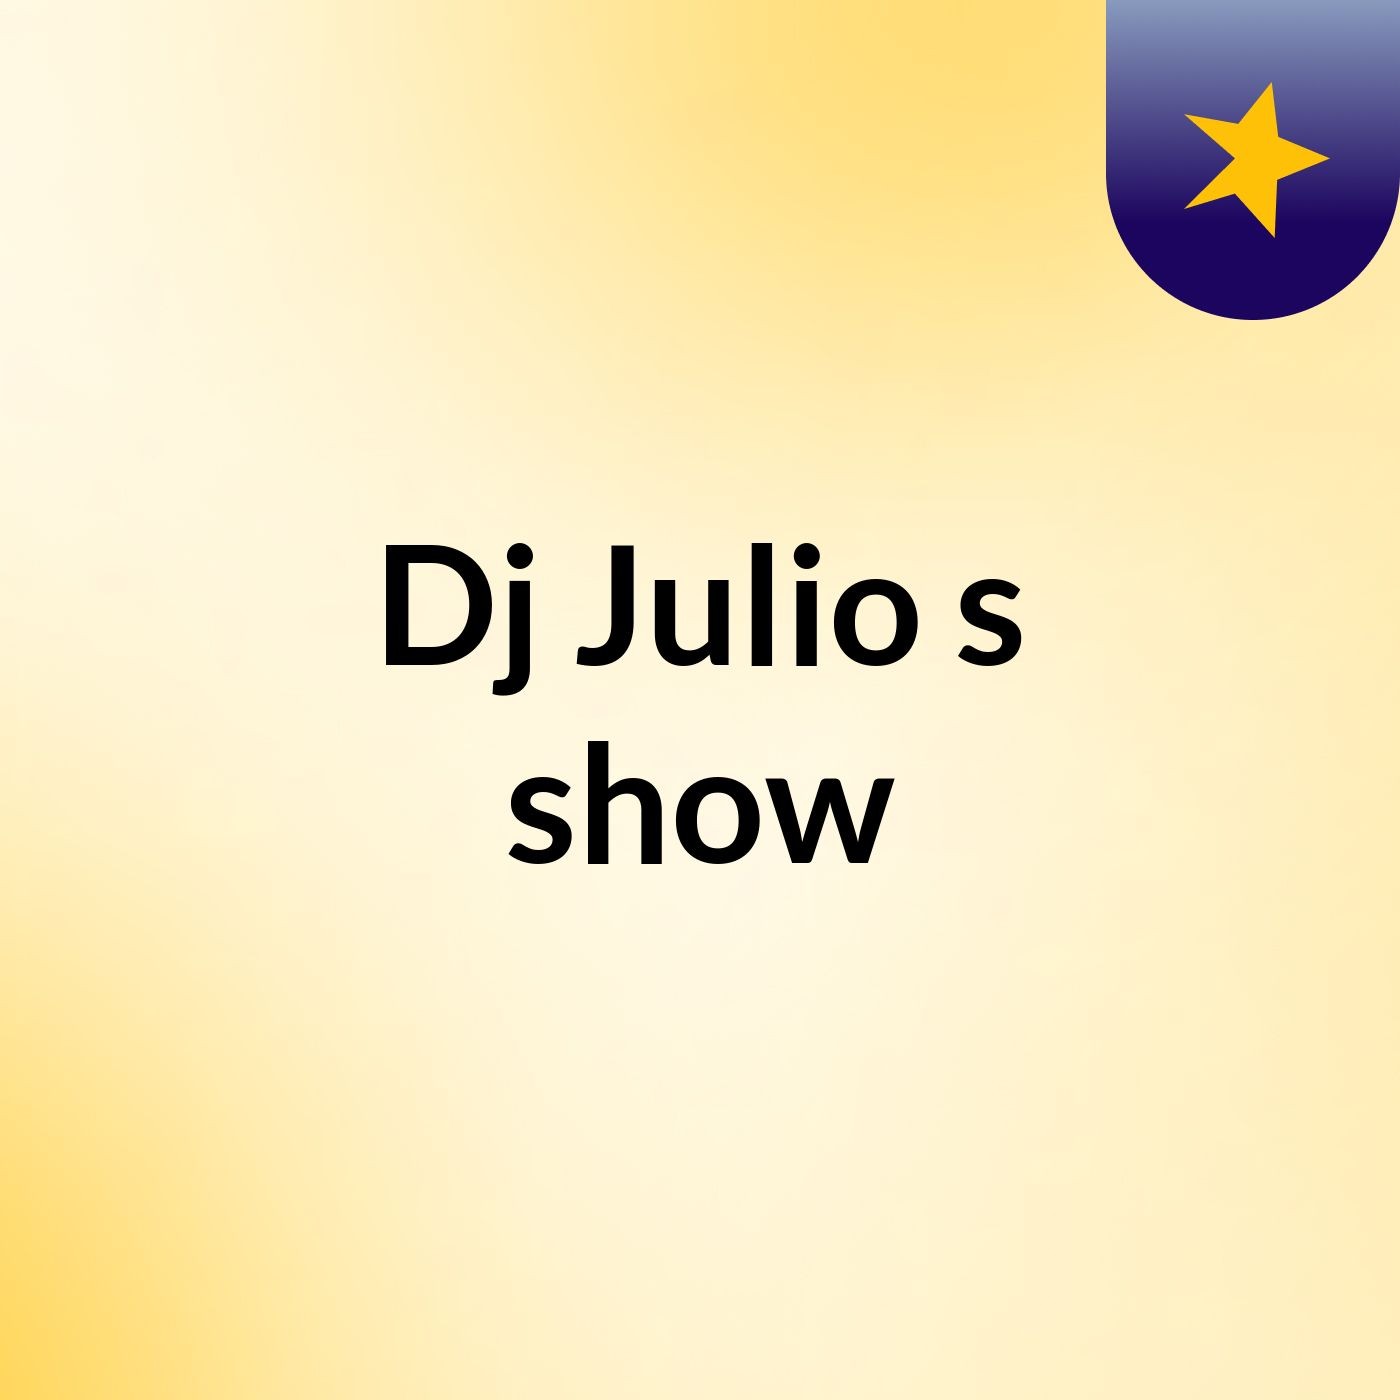 Dj Julio's show